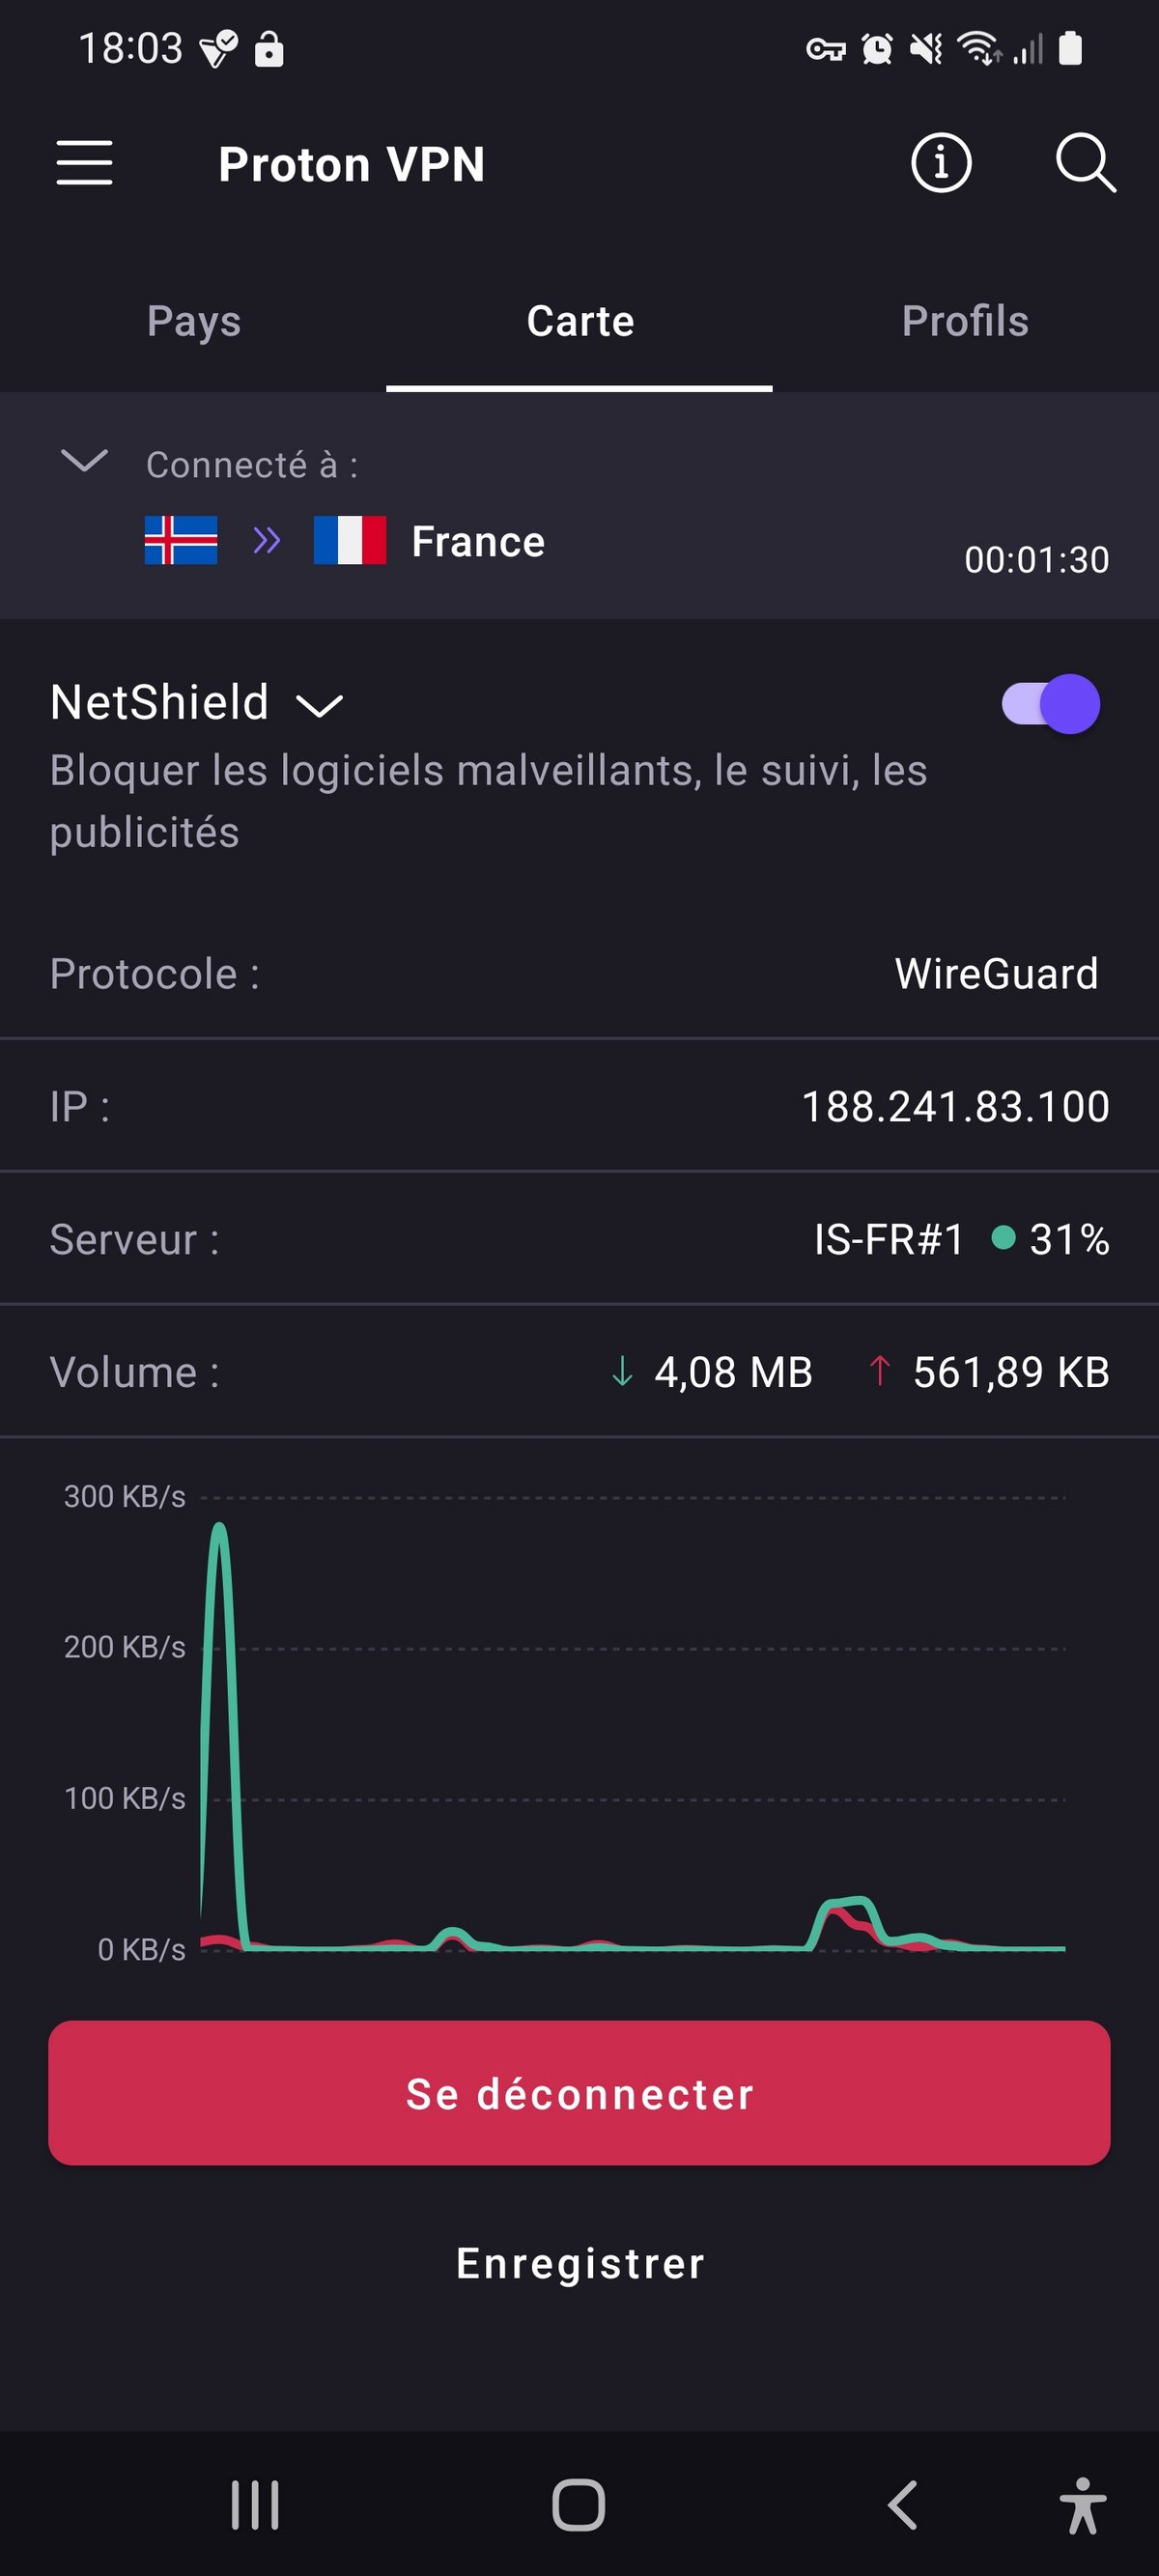 Proton VPN - Le détail de la connexion sur Android